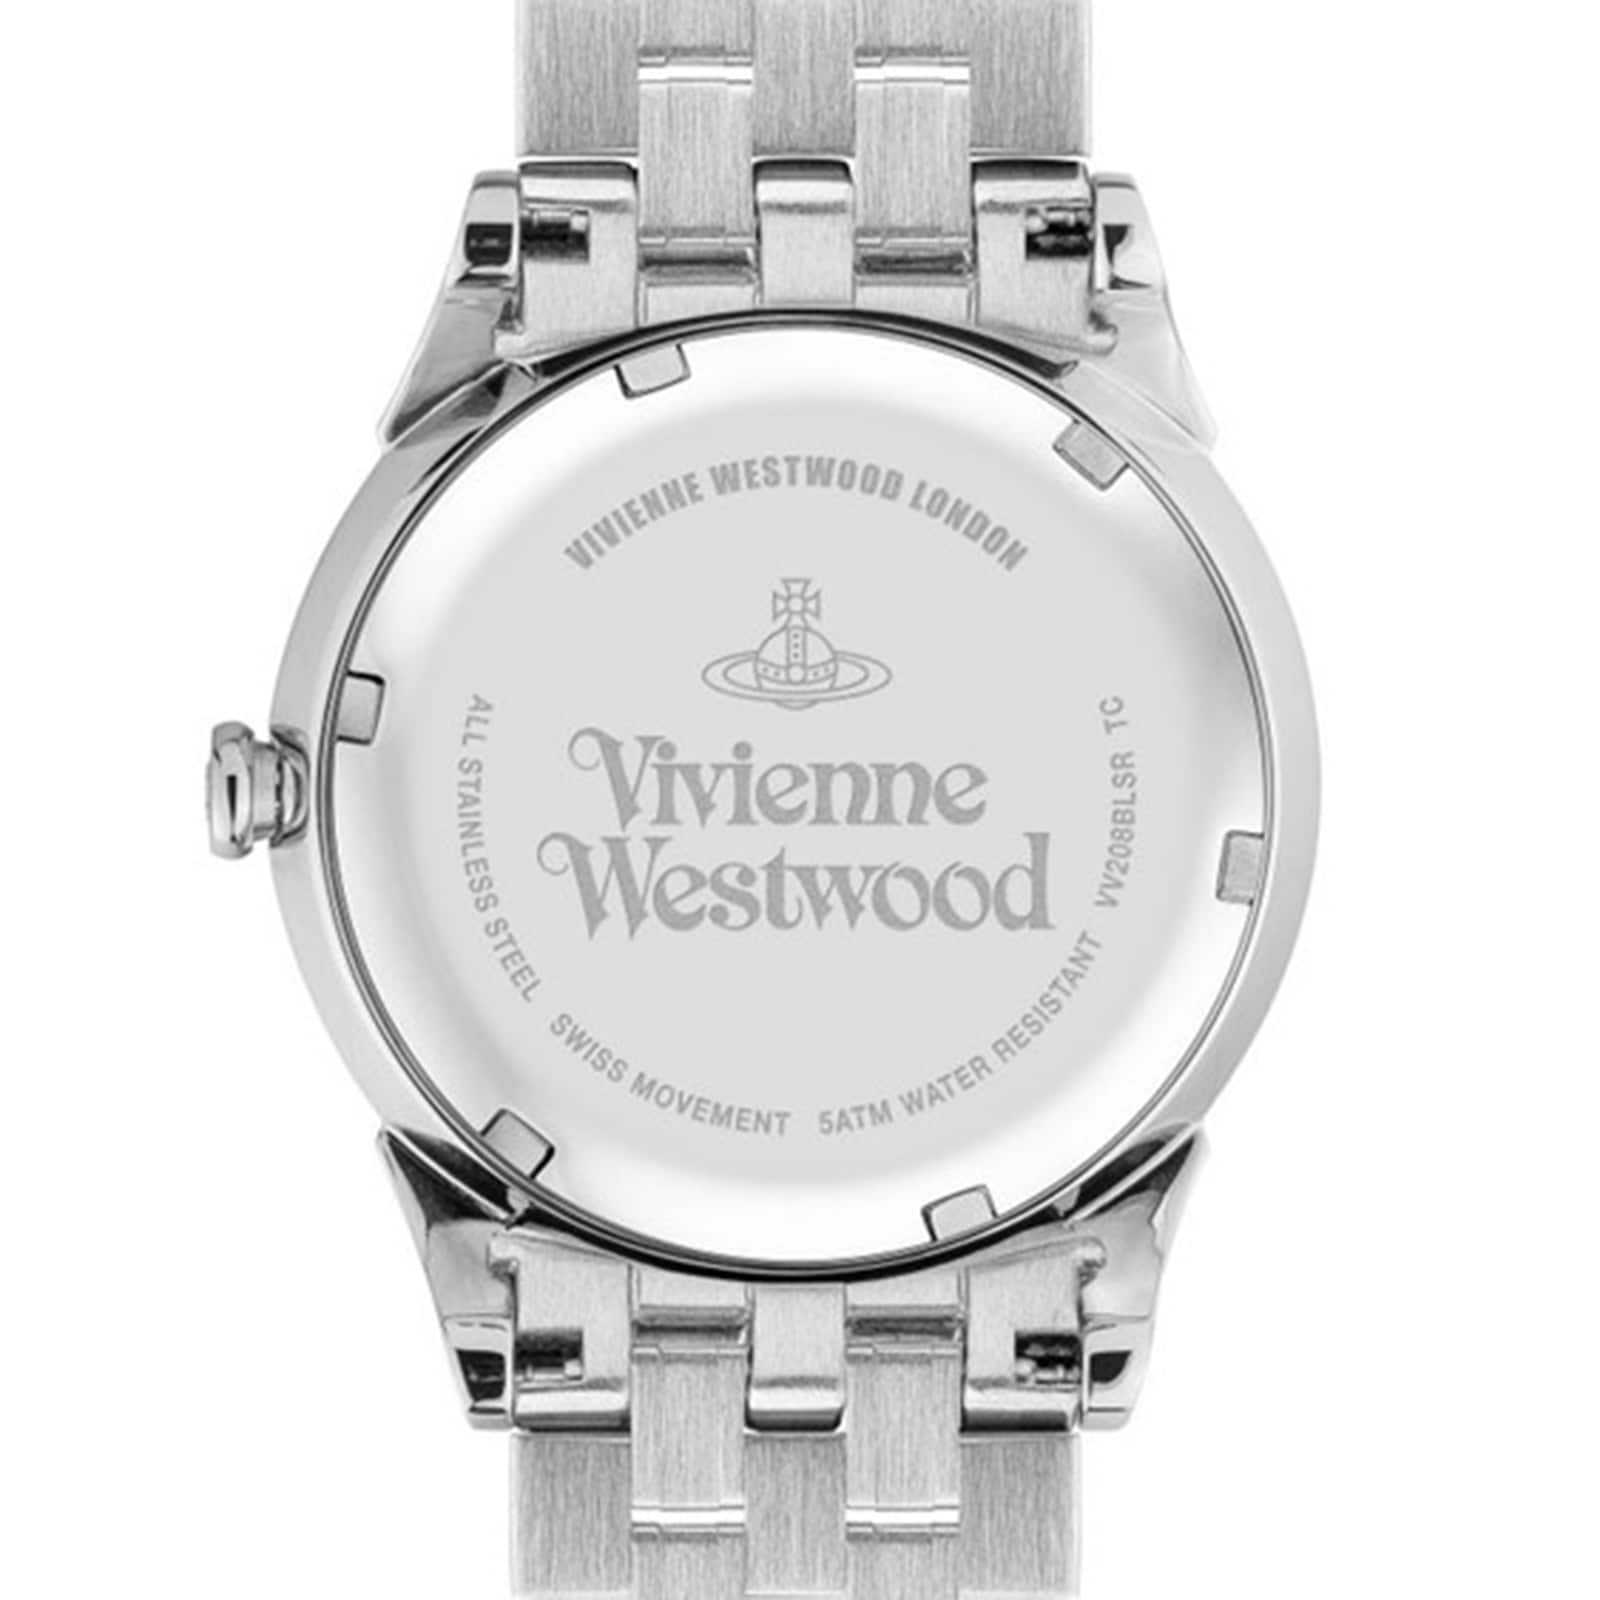 Vivienne Westwood Wallace 38mm Ladies Watch VV208BLSR | Goldsmiths